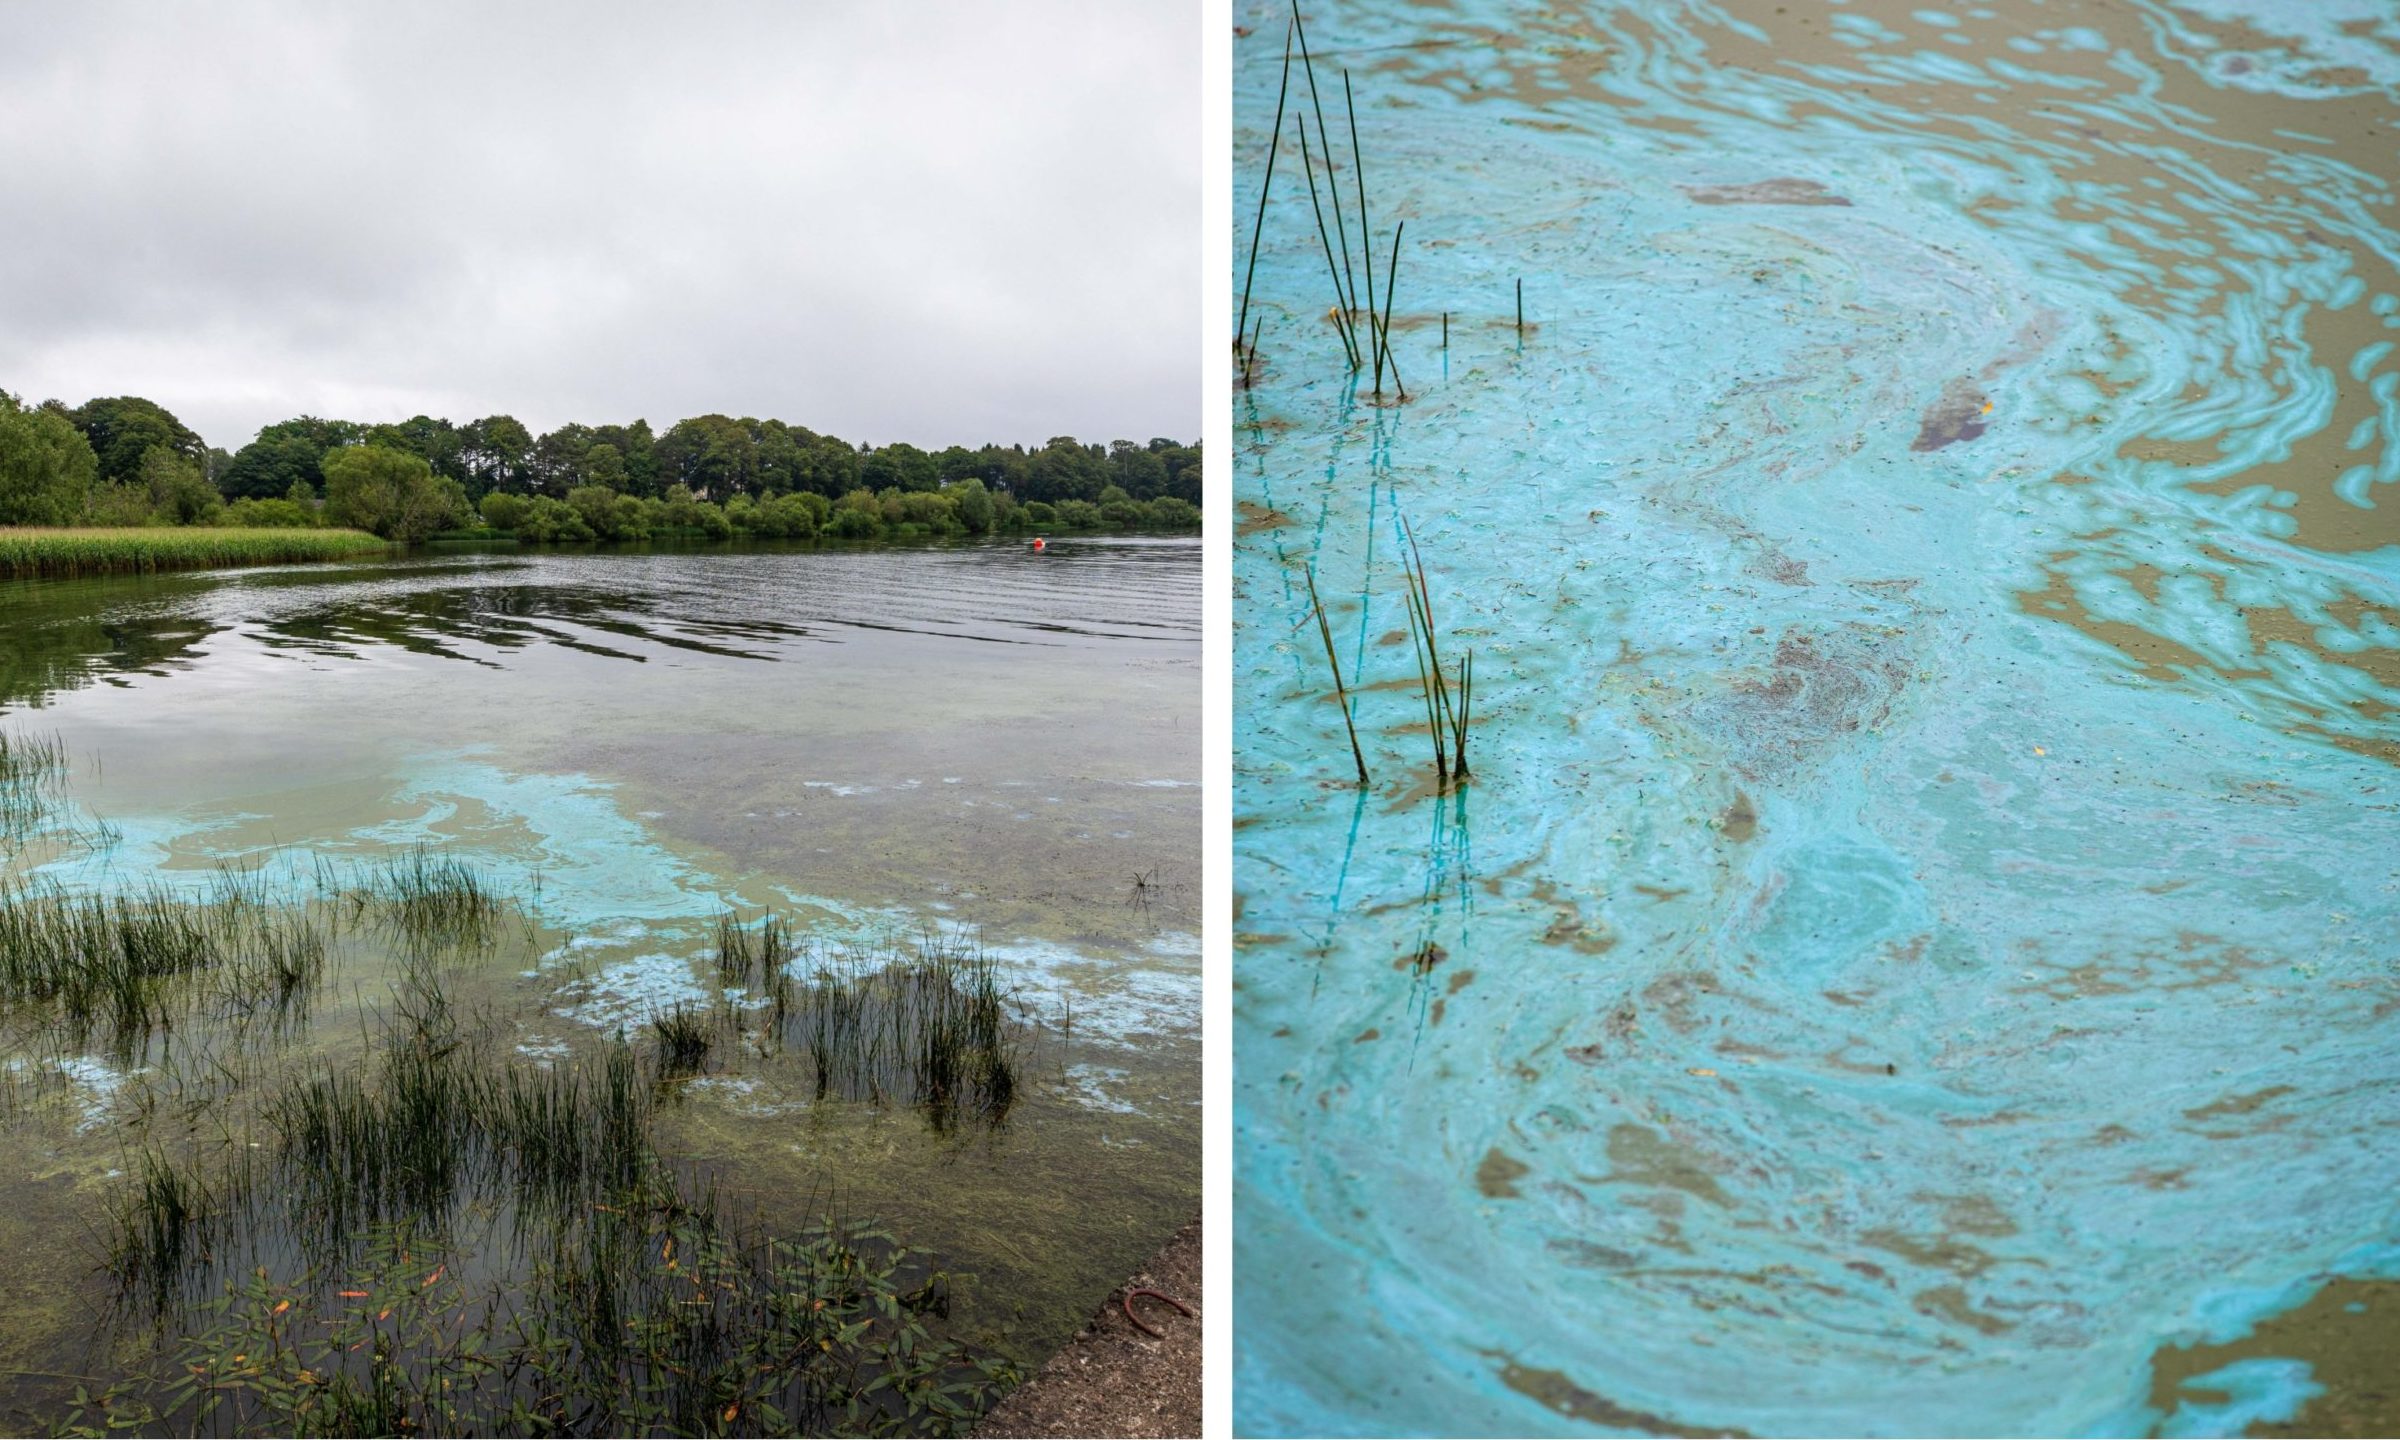 Toxic algae has appeared in Loch Leven,